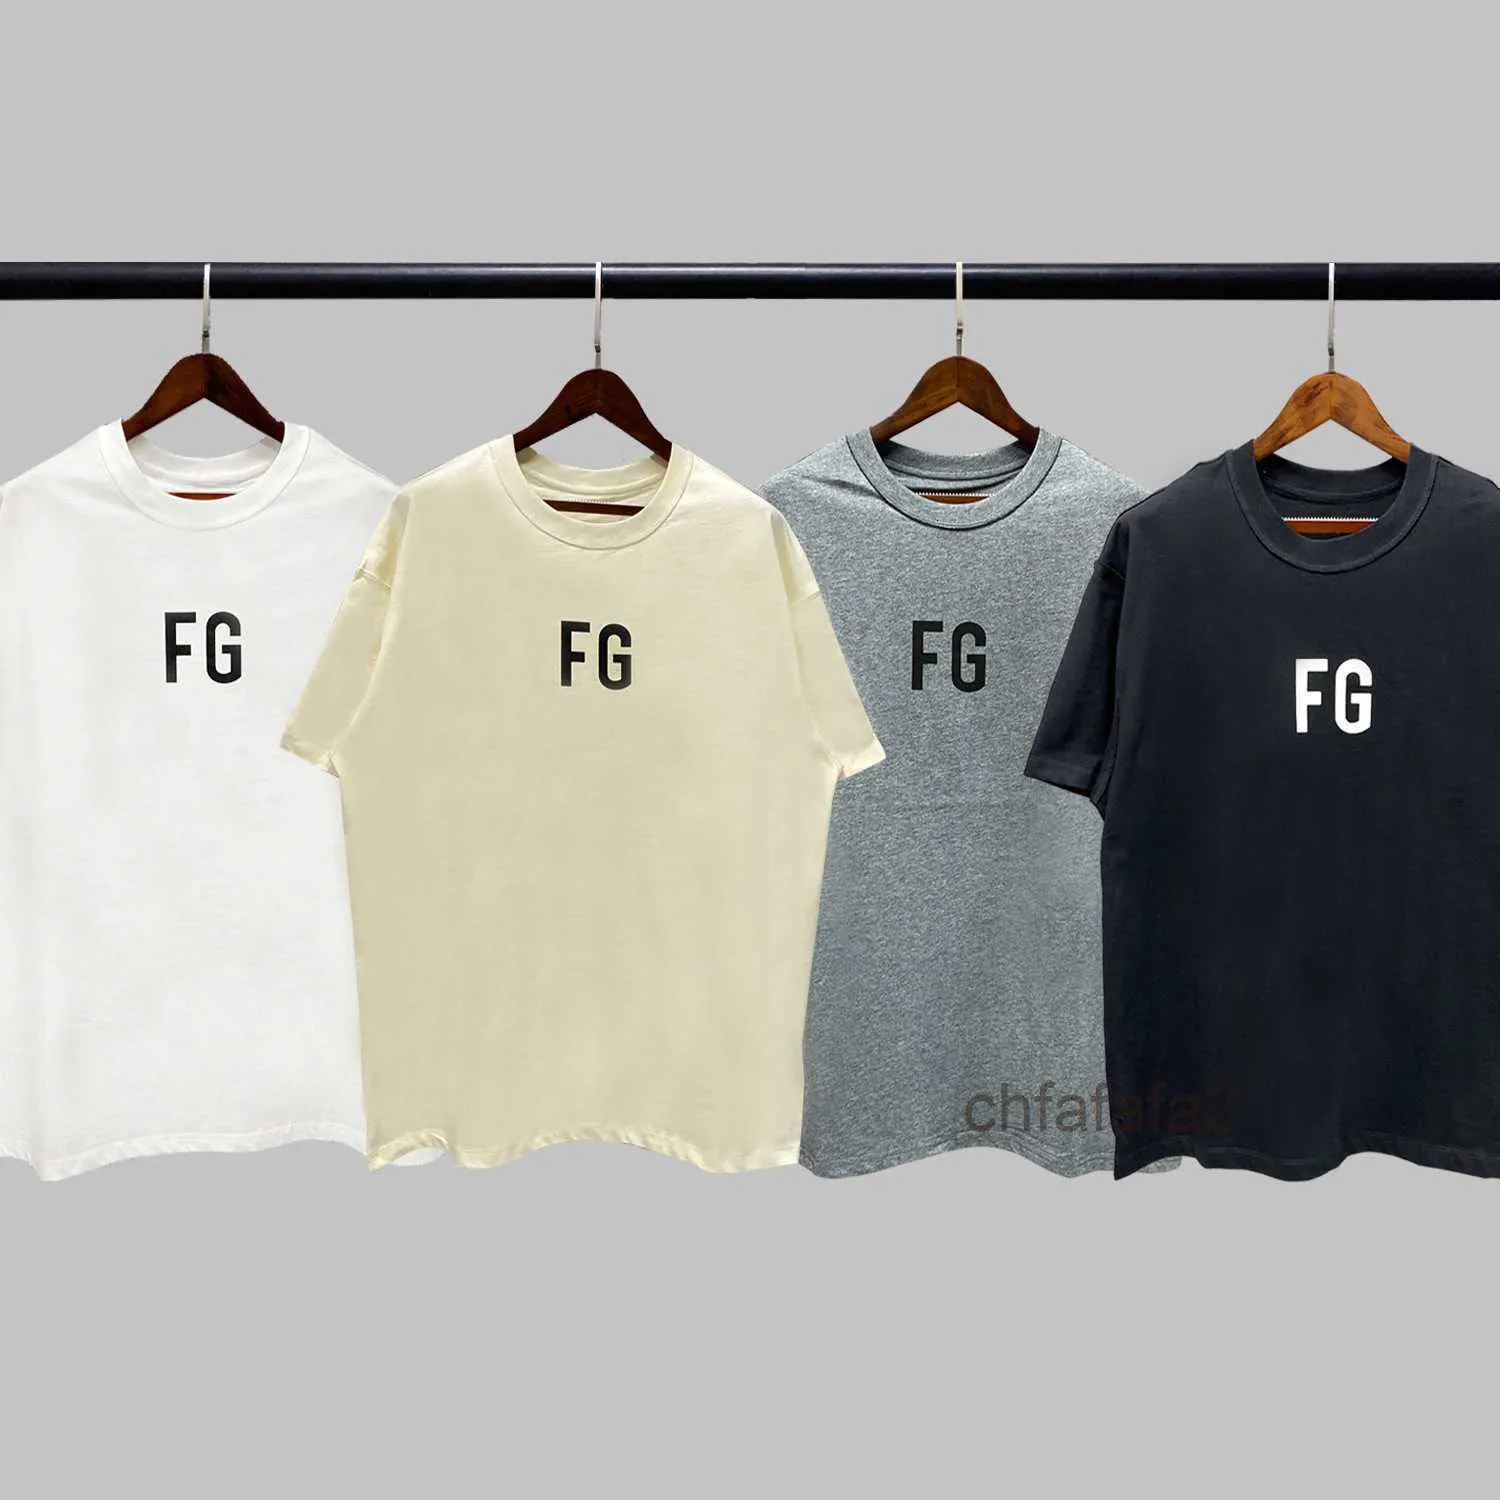 メンズTシャツファッションESSデザイナーOuyang NanaのGod of God FG Rich Shipmeeveシーズン6メインラインカップルFog High Street TシャツMen 2K61